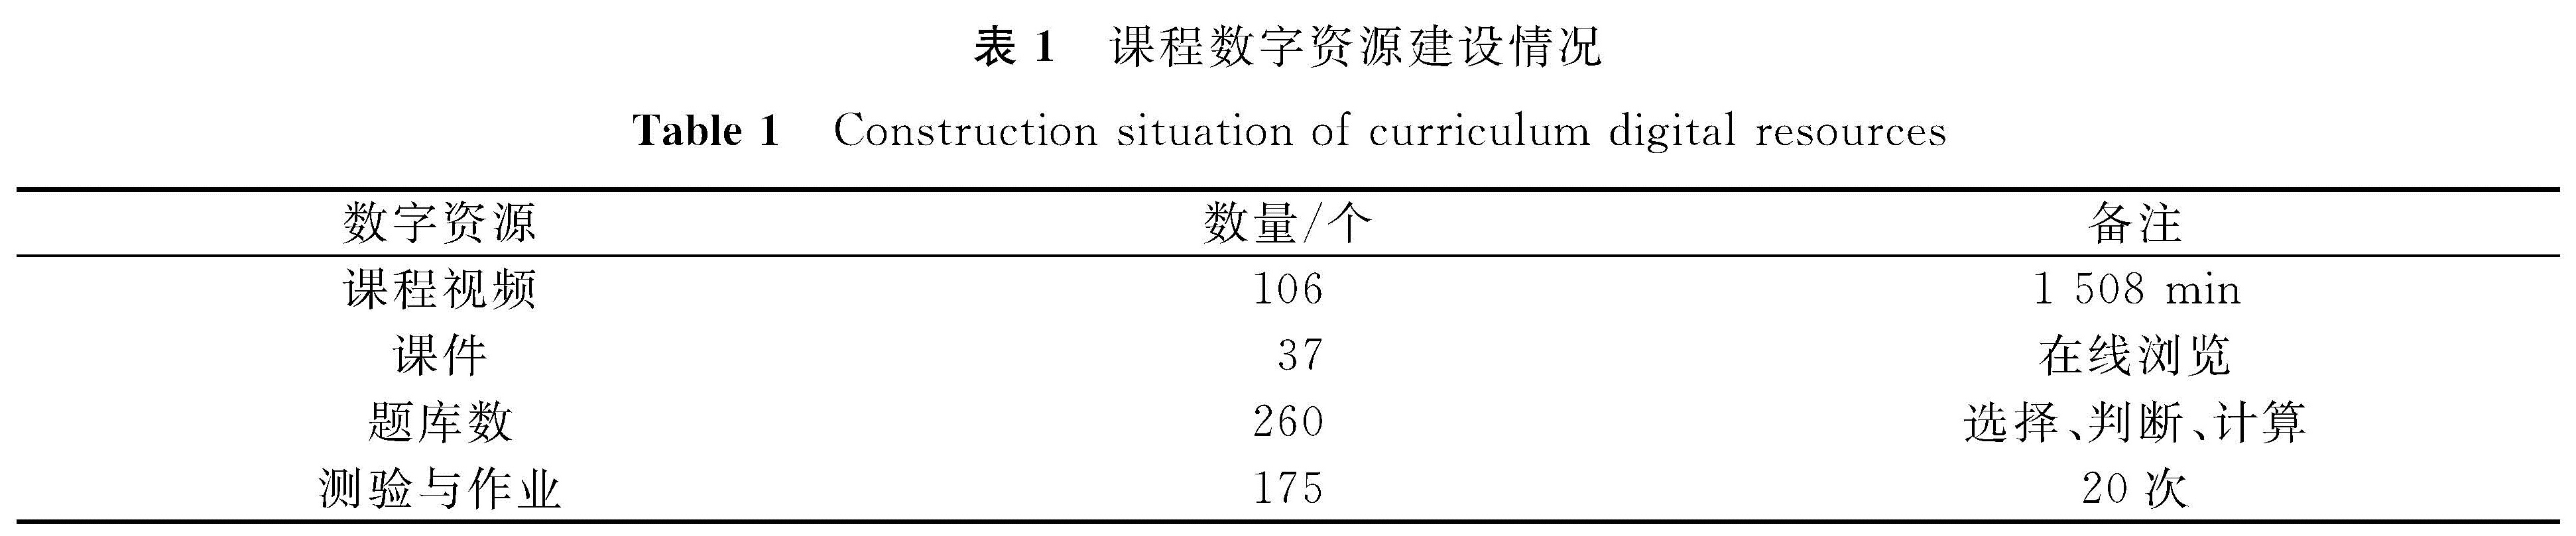 表1 课程数字资源建设情况<br/>Table 1 Construction situation of curriculum digital resources